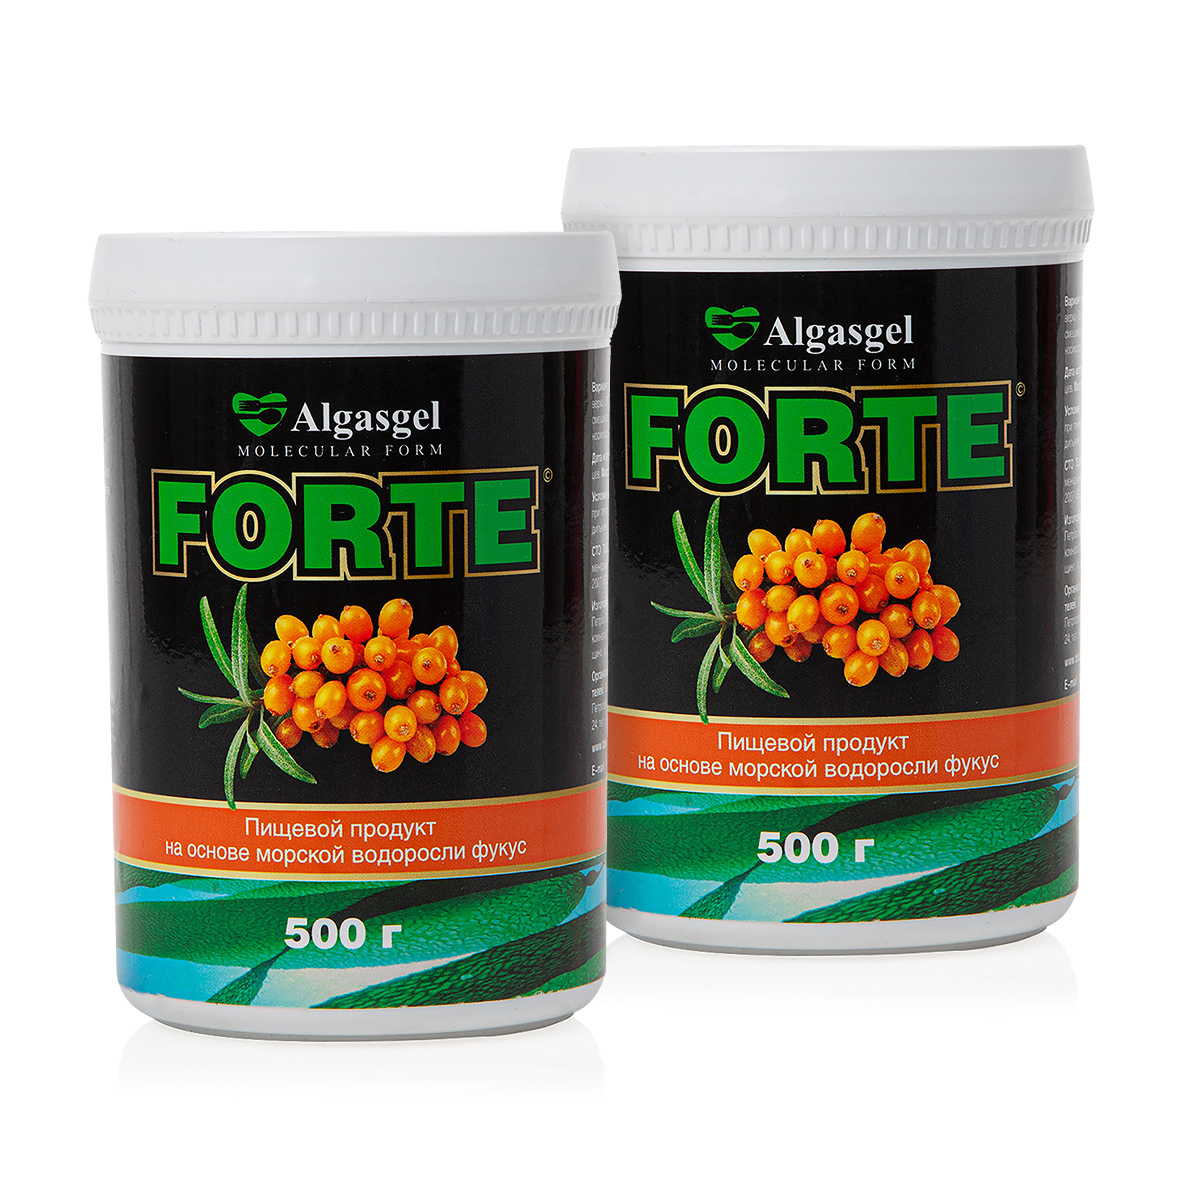 algasgel superfit для здорового похудения 500 г Пищевой продукт Algasgel Forte (2 шт. по 500 г) + подарок (500 г)